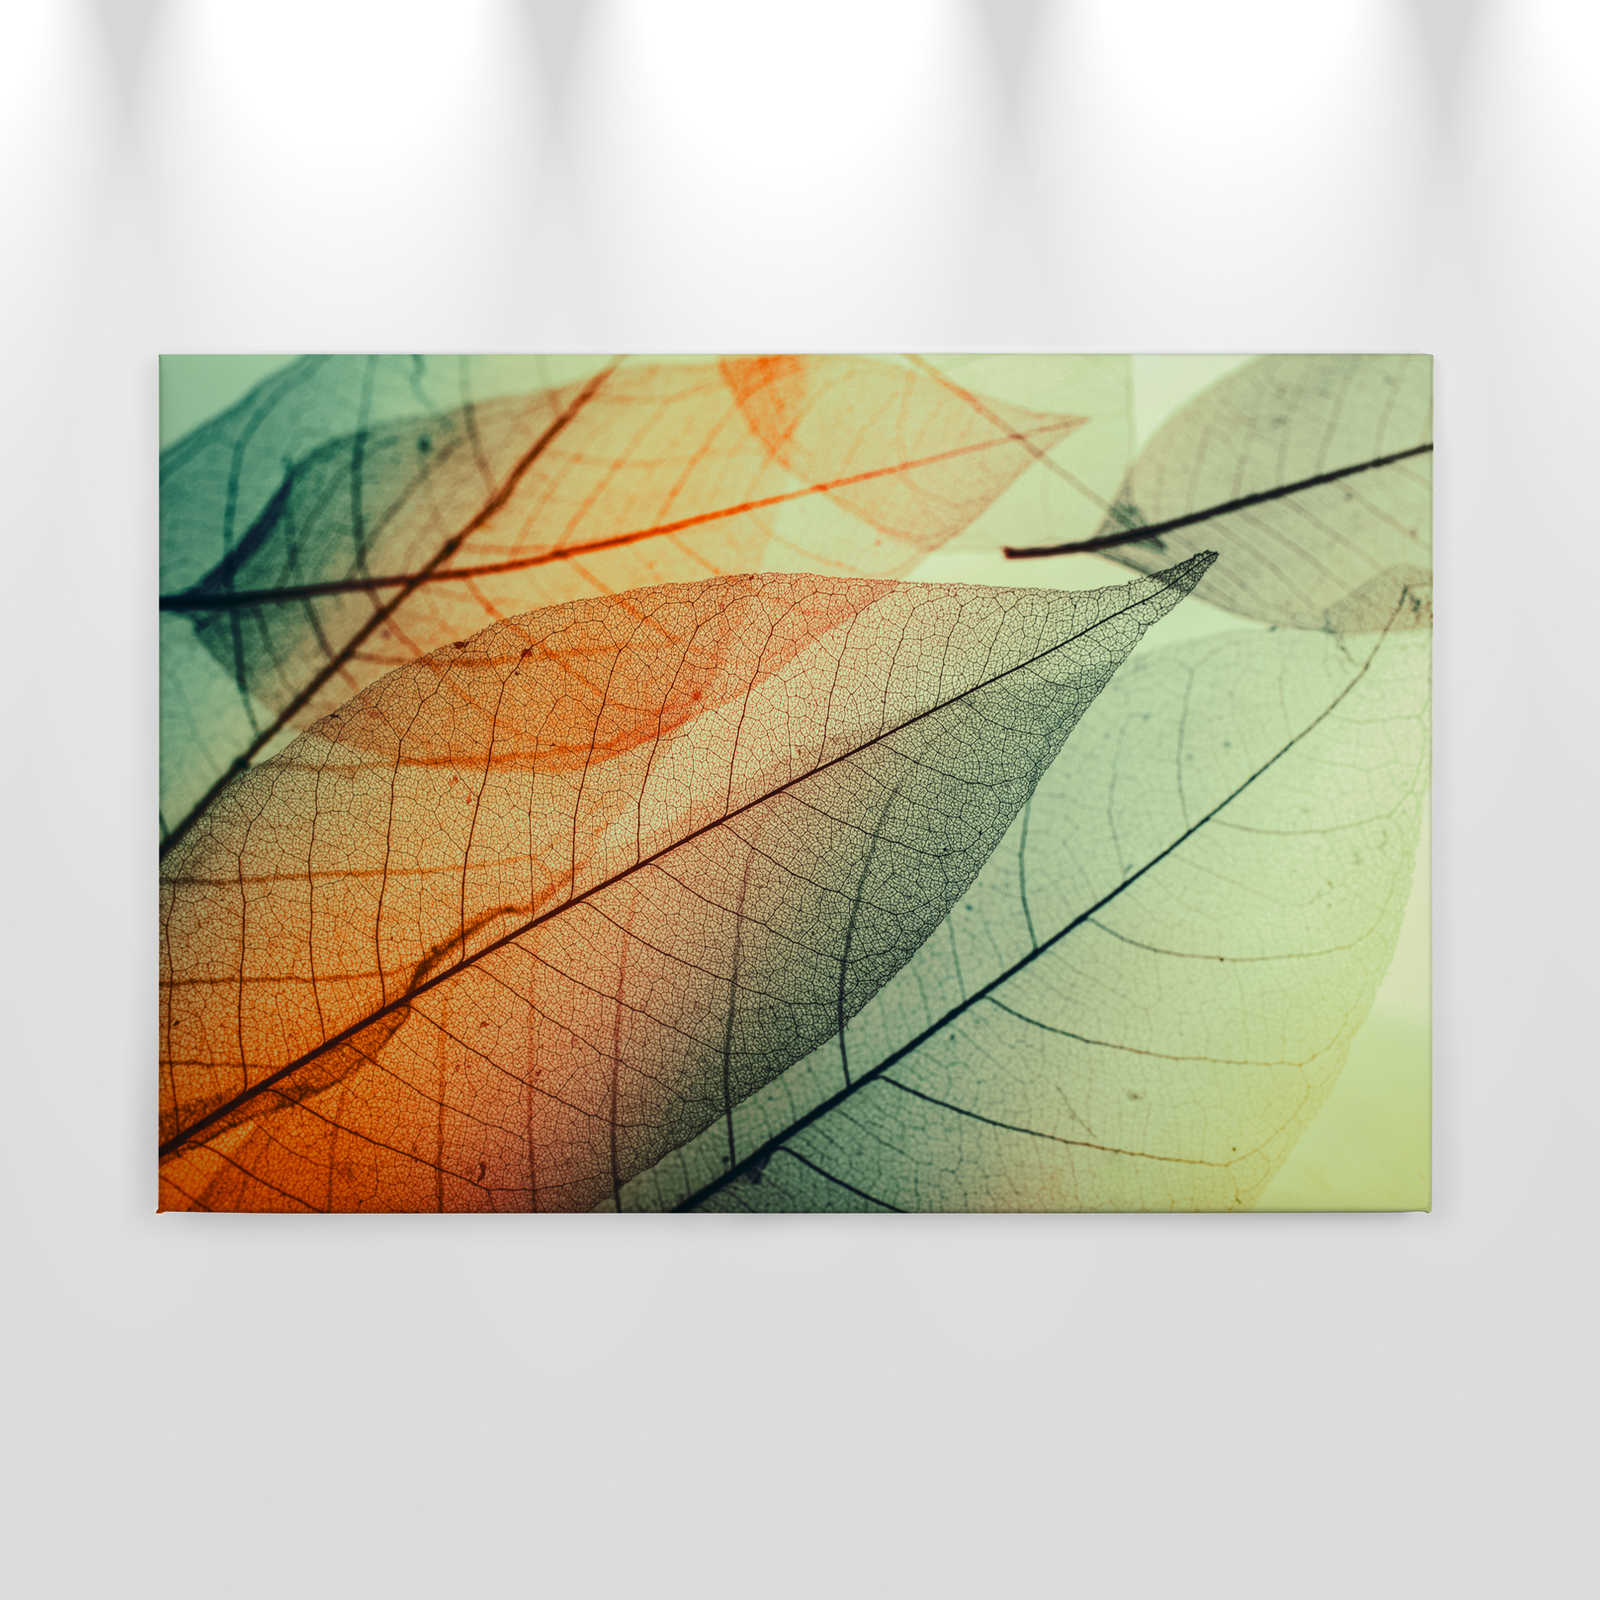             Leinwand mit Blätter-Design – 0,90 m x 0,60 m
        